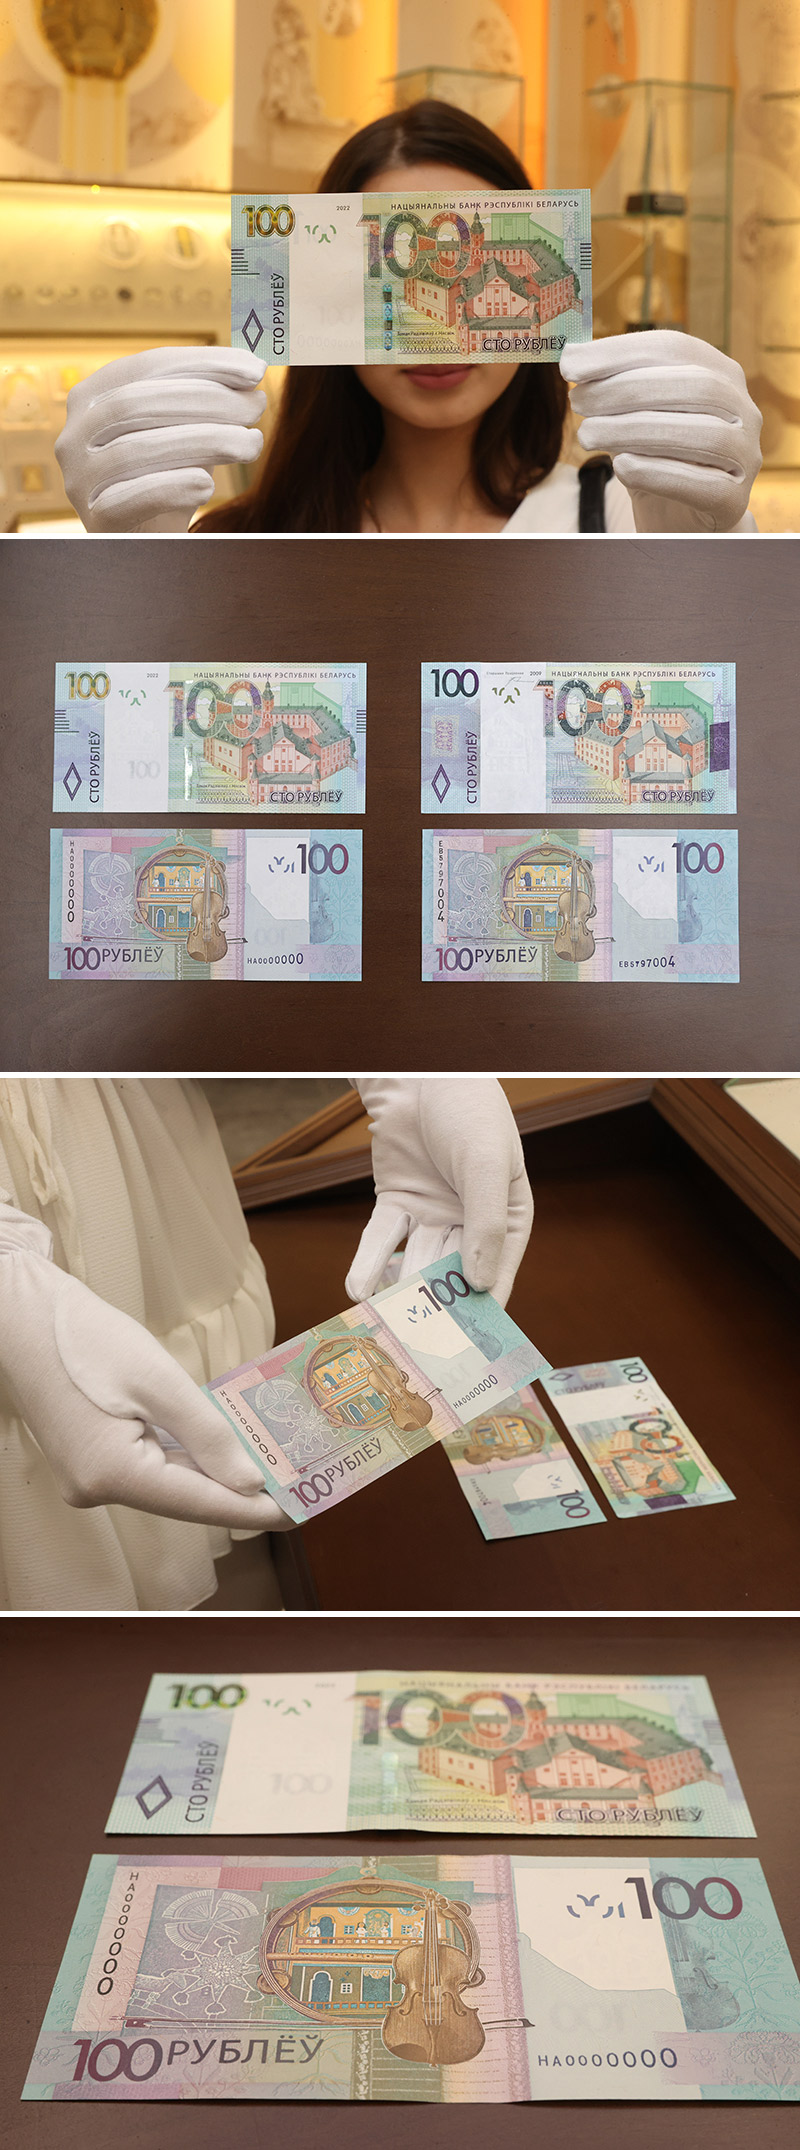 Беларускія грошы: банкноты наміналам 100 рублёў